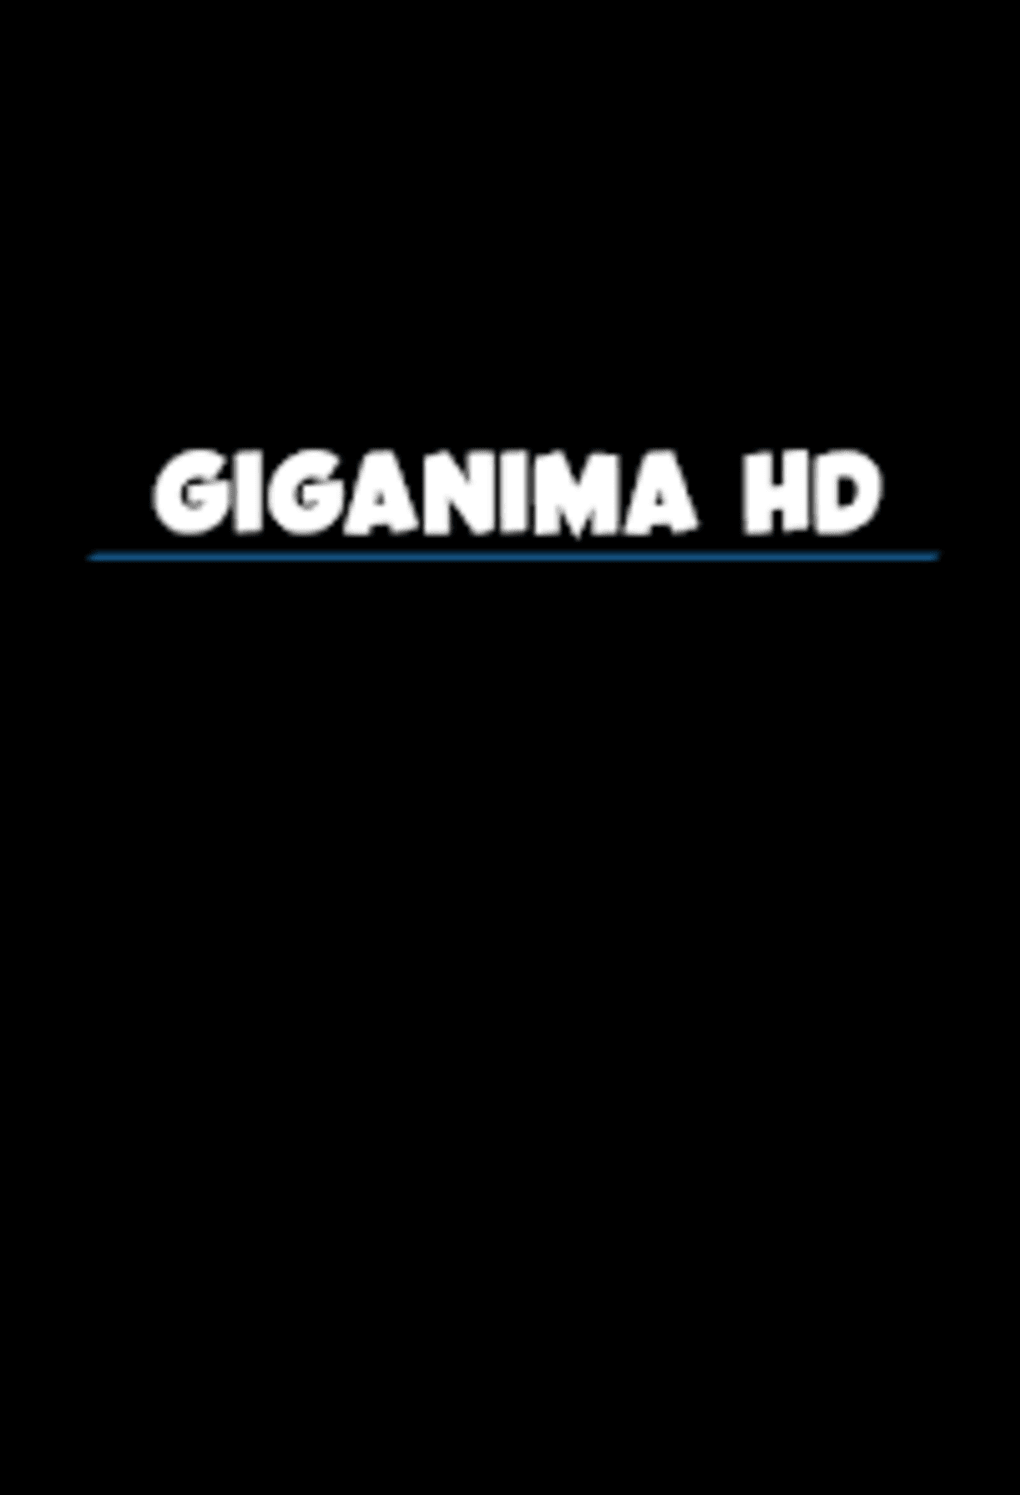 Dicas do blog #6: Como fazer download de animes no Giganime